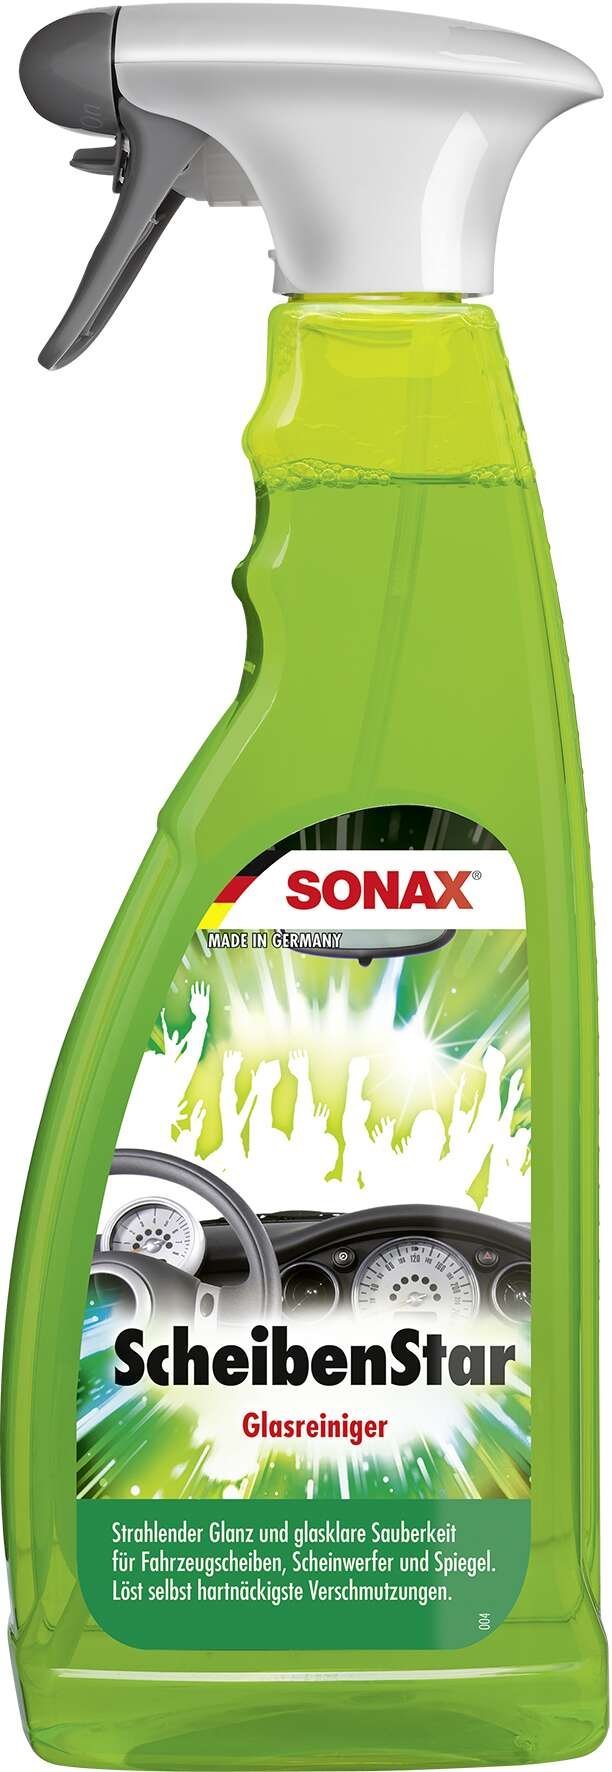 SONAX ScheibenStar PET flacone spray 750 ml detergente per vetri